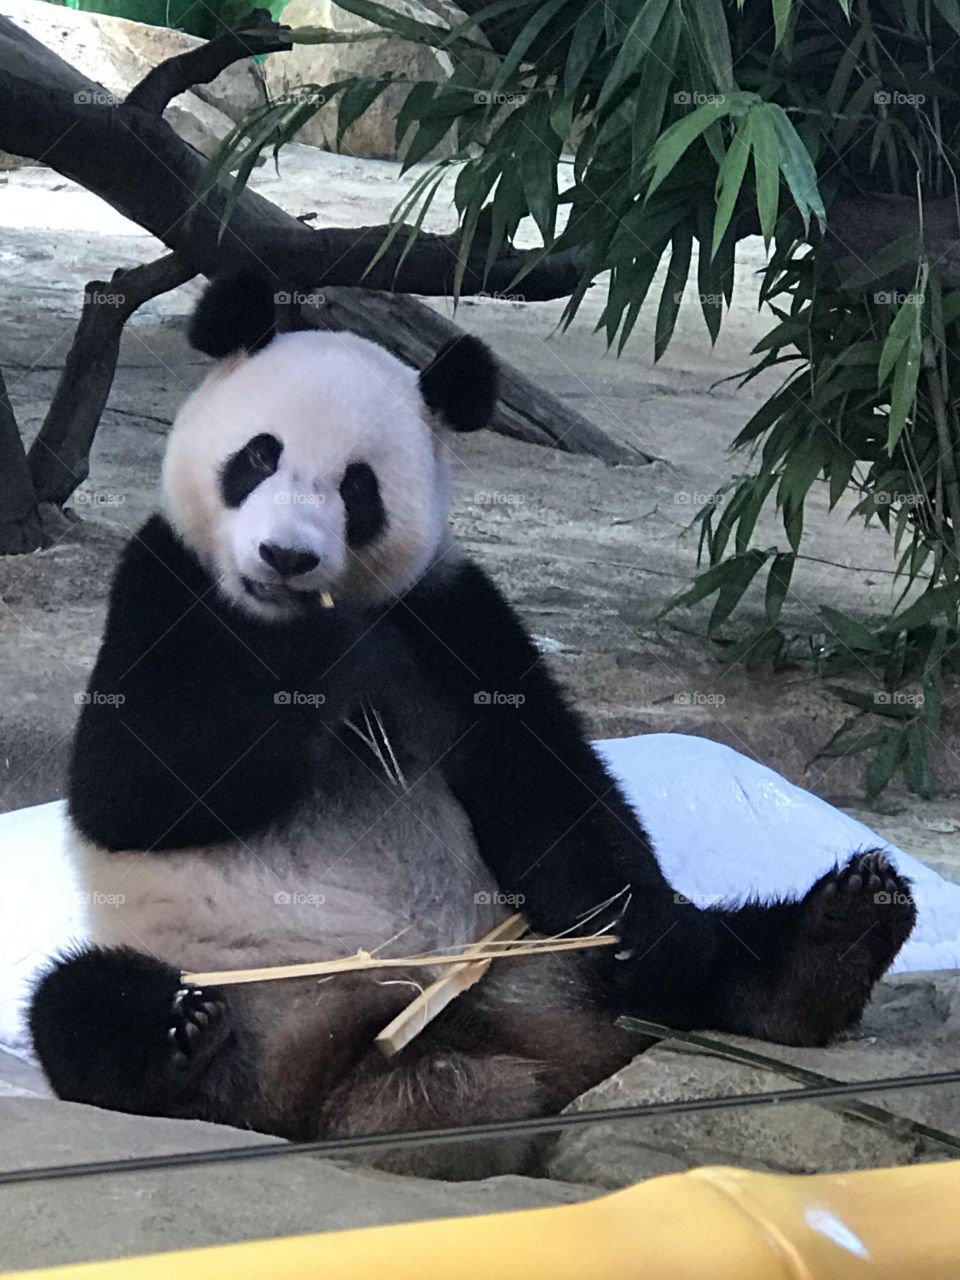 Panda at the Chimelong zoo in China